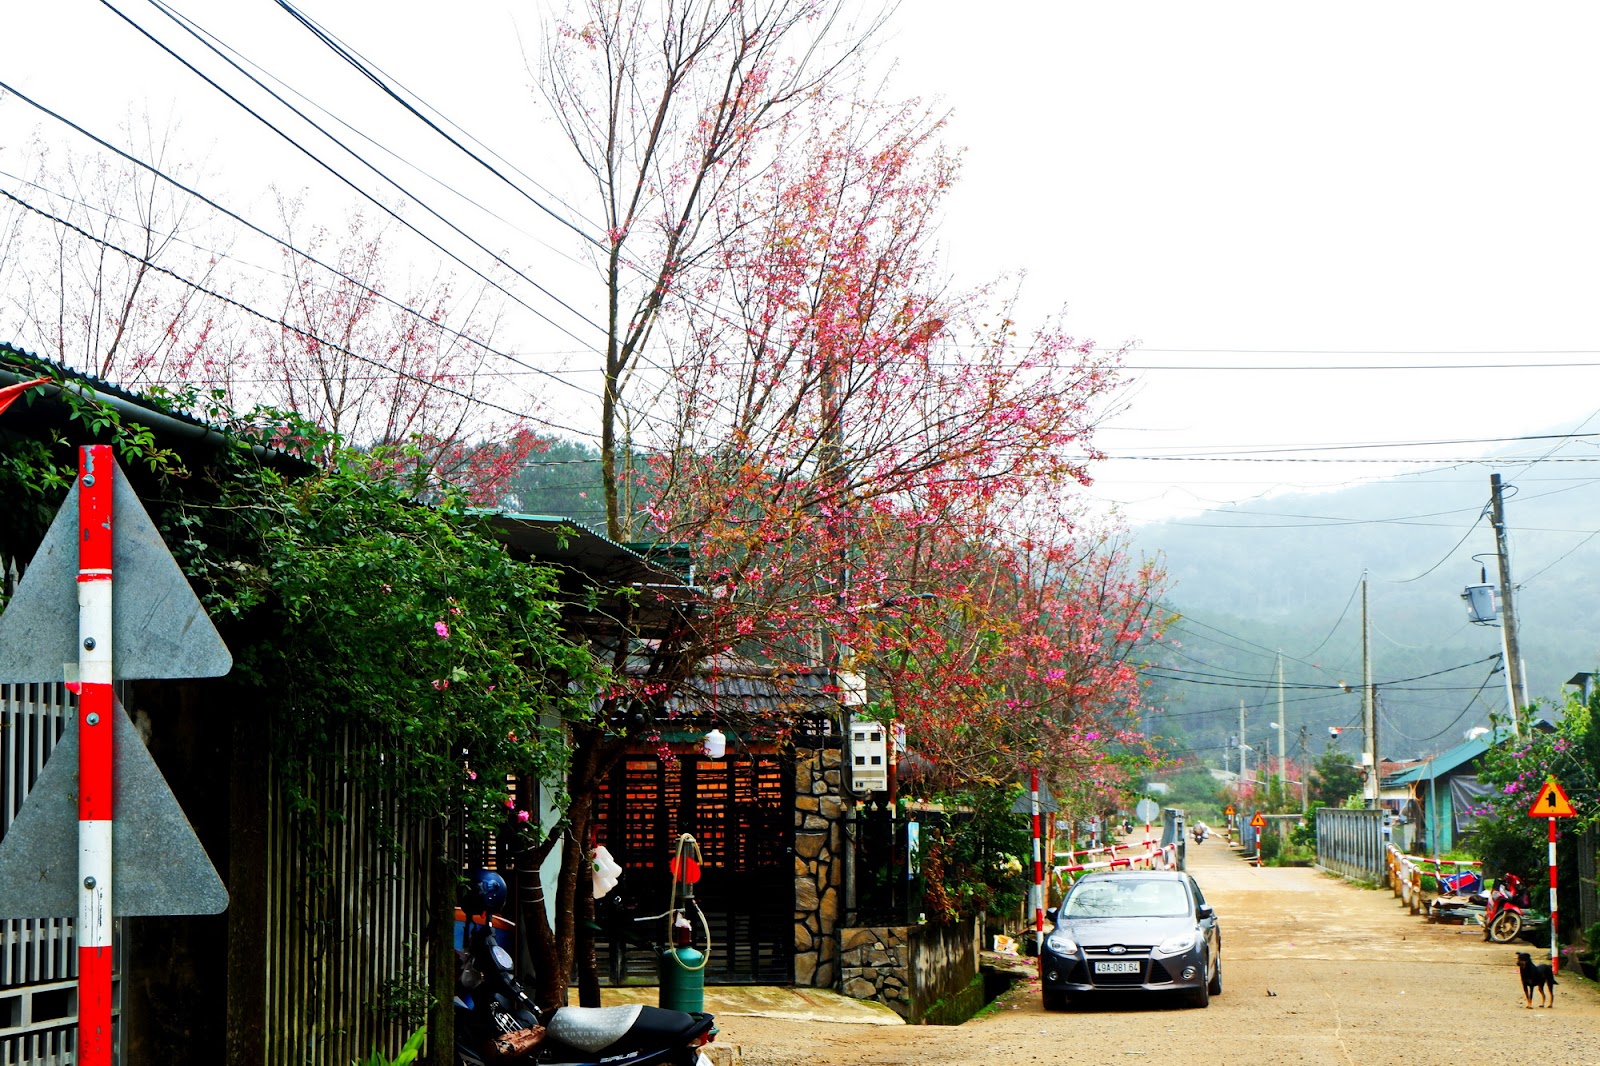 “Thành phố” hoa đào bung nở tuyệt đẹp ở một ngôi làng nhỏ bình yên - 1